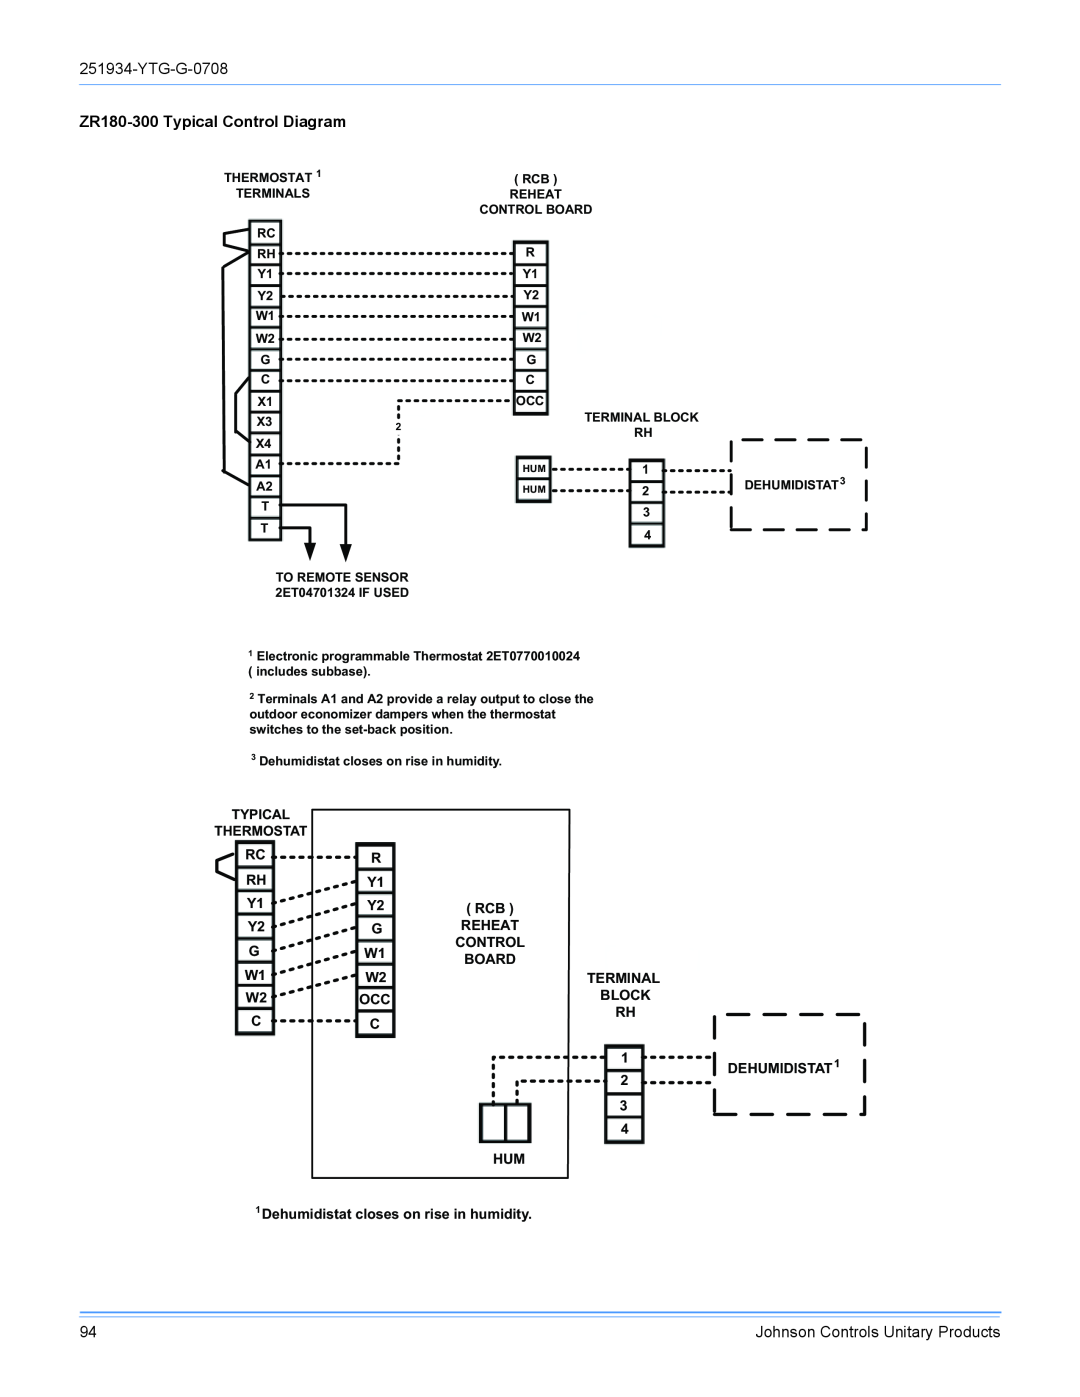 York R-410A manual ZR180-300Typical Control Diagram 